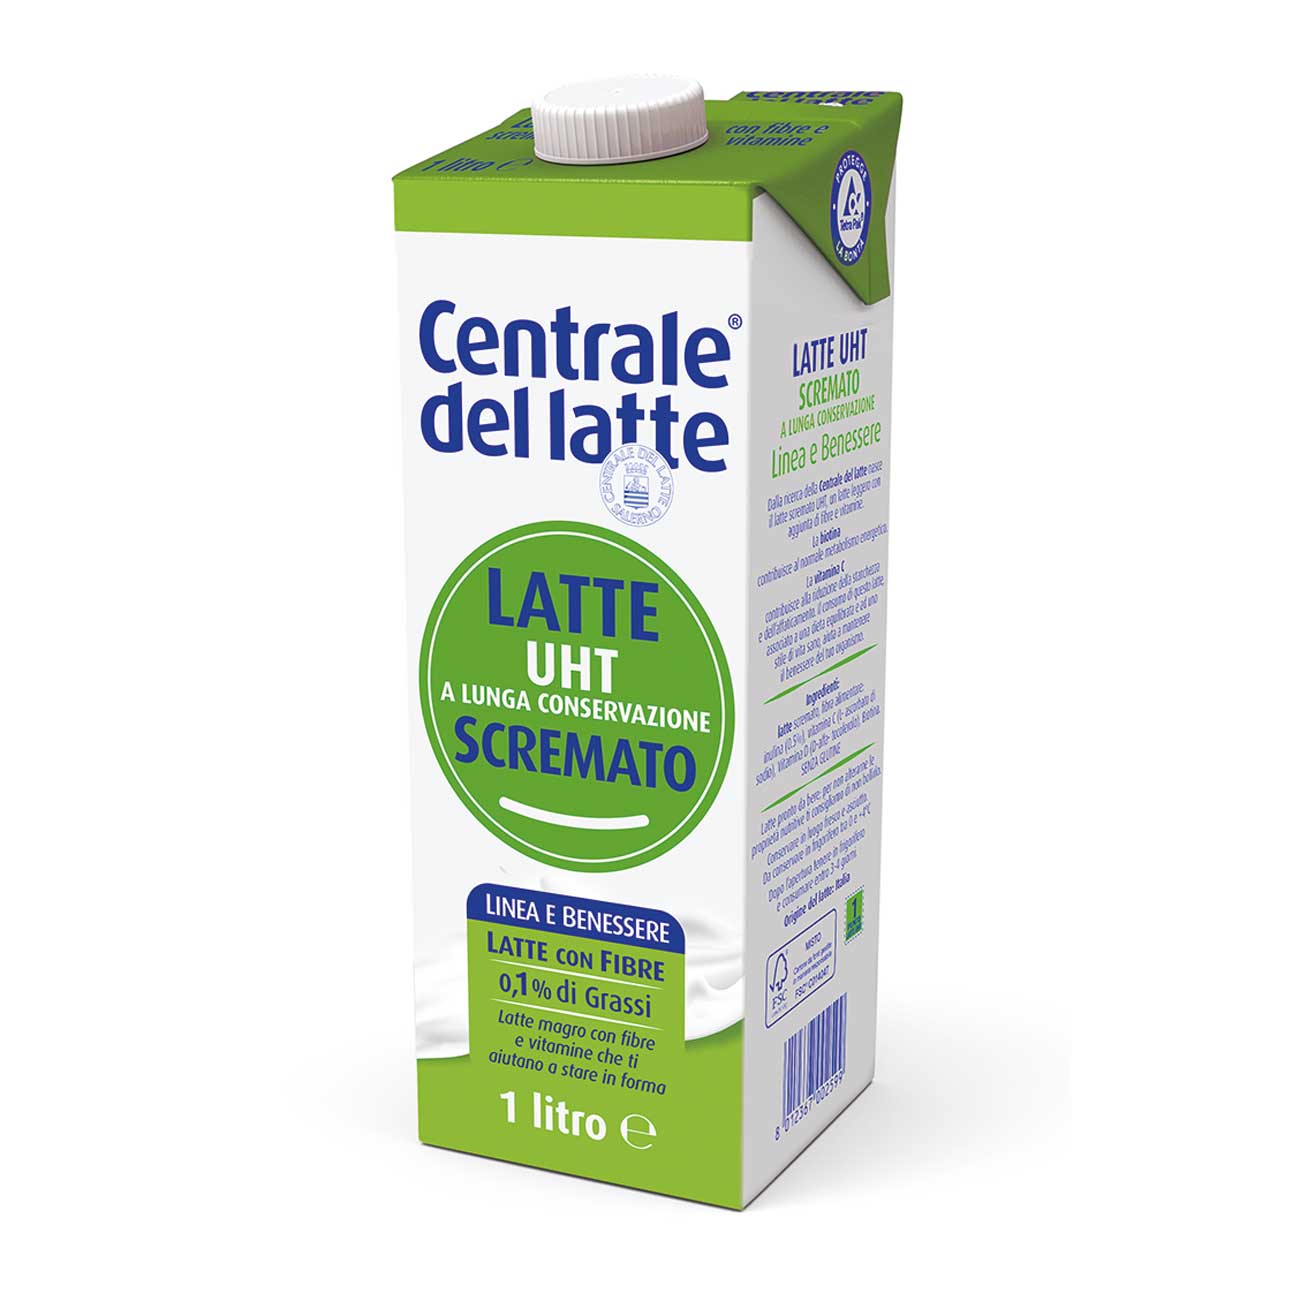 Il latte della centrale Senza lattosio - Centrale del latte - 1 l